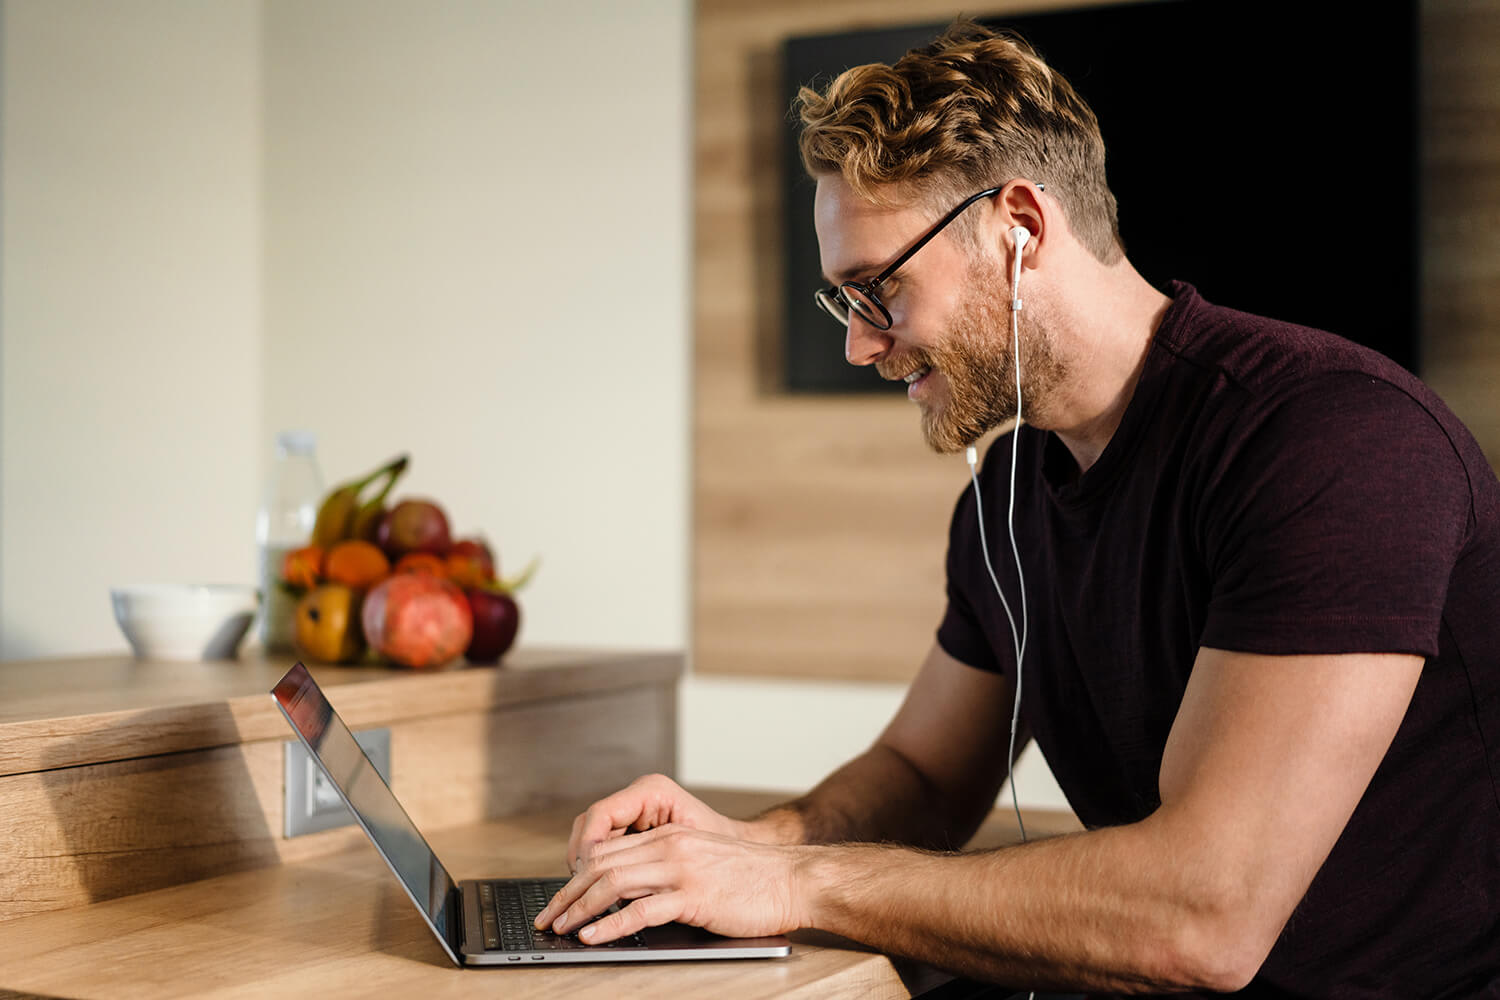 Ein Mann sitzt vor seinem Laptop und befindet sich dabei in einer Online-Besprechung. Das Bild visualisiert den Walraven-Benefit "Flexible Arbeitszeiten mitsamt Gleitzeitregelung und Homeoffice-Möglichkeiten".